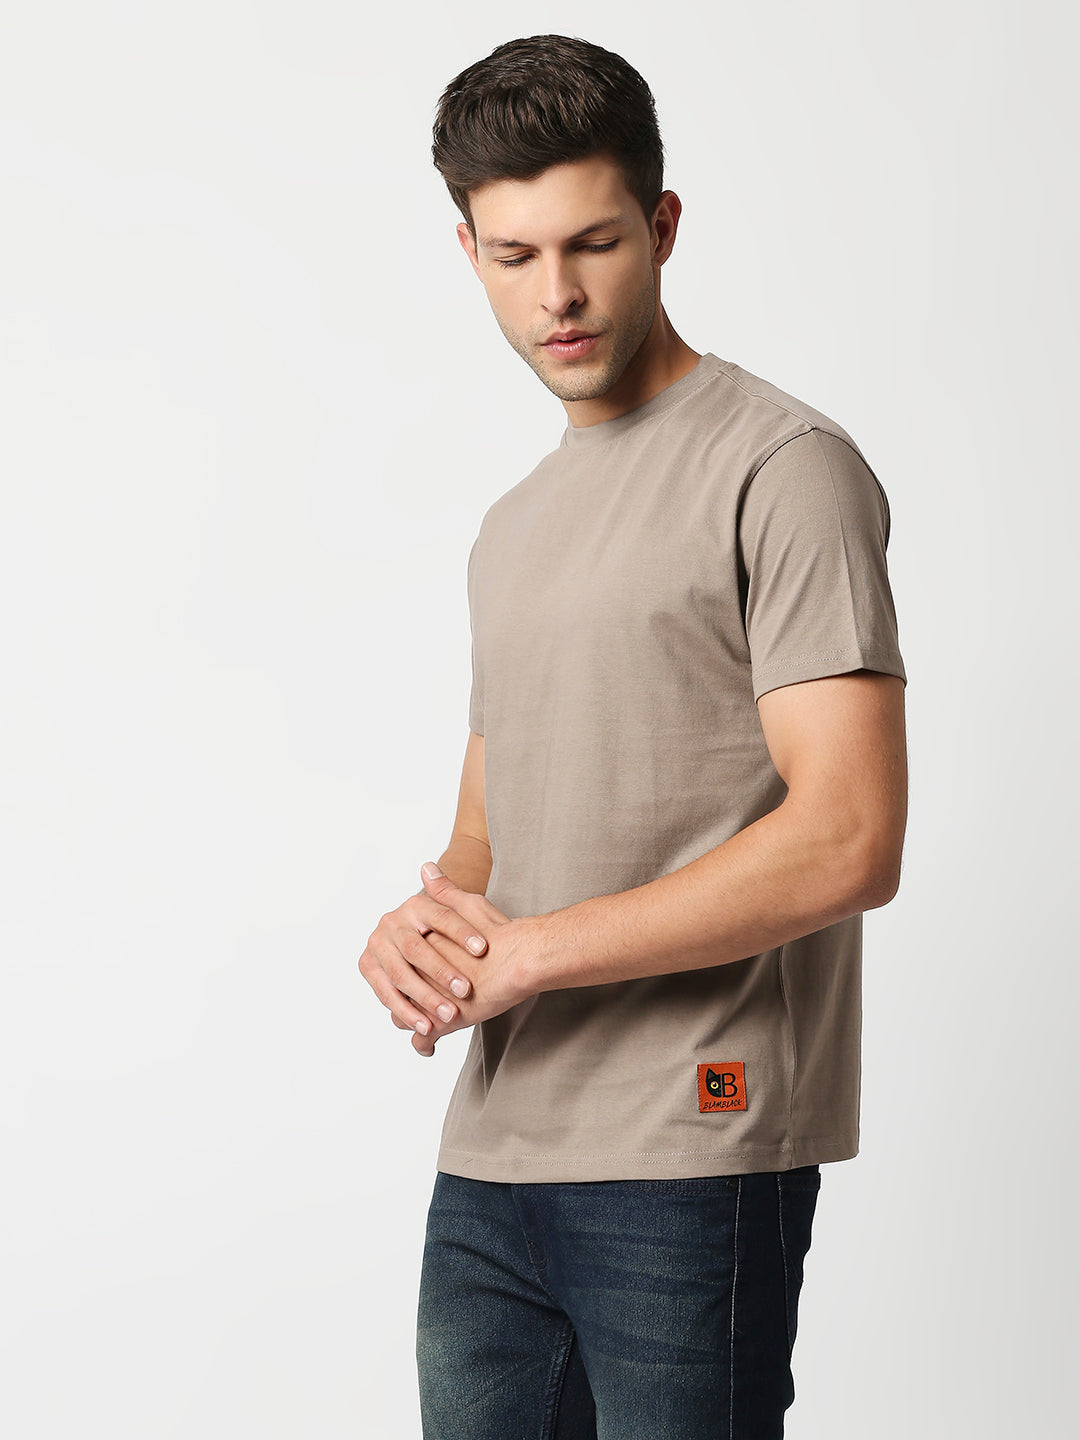 Buy Blamblack Men's Beige Color Regular Plain T Shirt